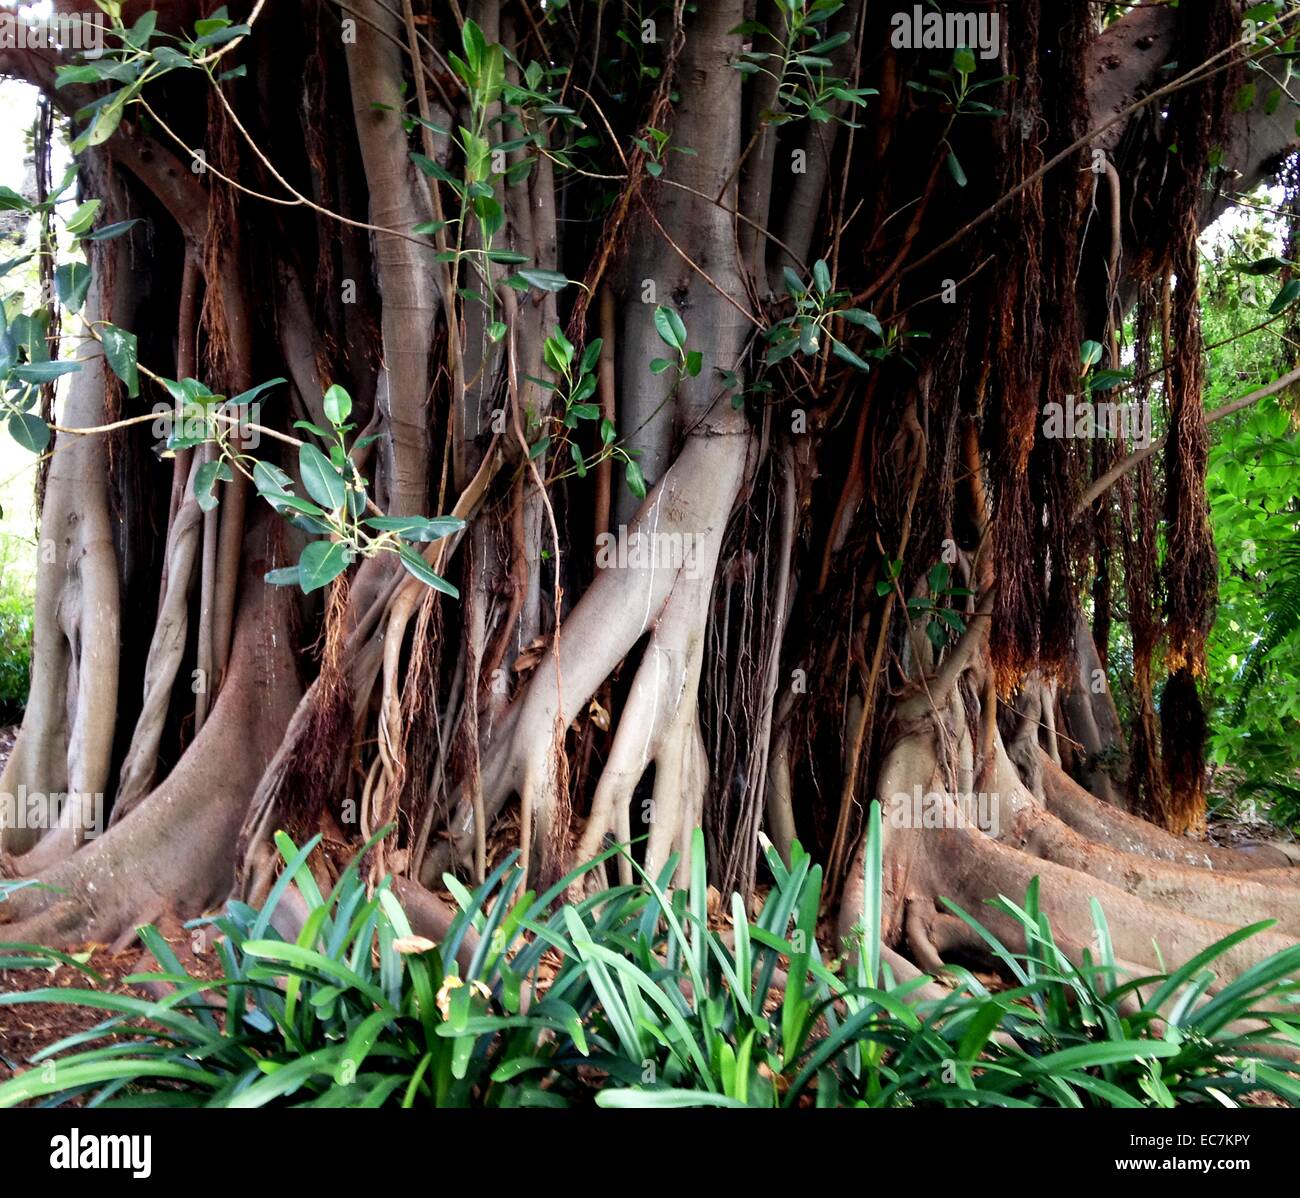 Llianas et renforcer les racines sur un arbre tropical dans les jardins botaniques (parc), Melbourne, Australie. Liana est une tige, la vigne qui sont enracinés dans le sol au niveau du sol et de l'utilisation des arbres, ainsi que les autres moyens d'appui vertical, pour grimper jusqu'à l'auvent d'avoir accès à des endroits bien éclairés de la forêt. Les lianes sont particulièrement caractéristique des forêts de feuillus humides tropicales et humides, y compris les forêts pluviales tempérées Banque D'Images